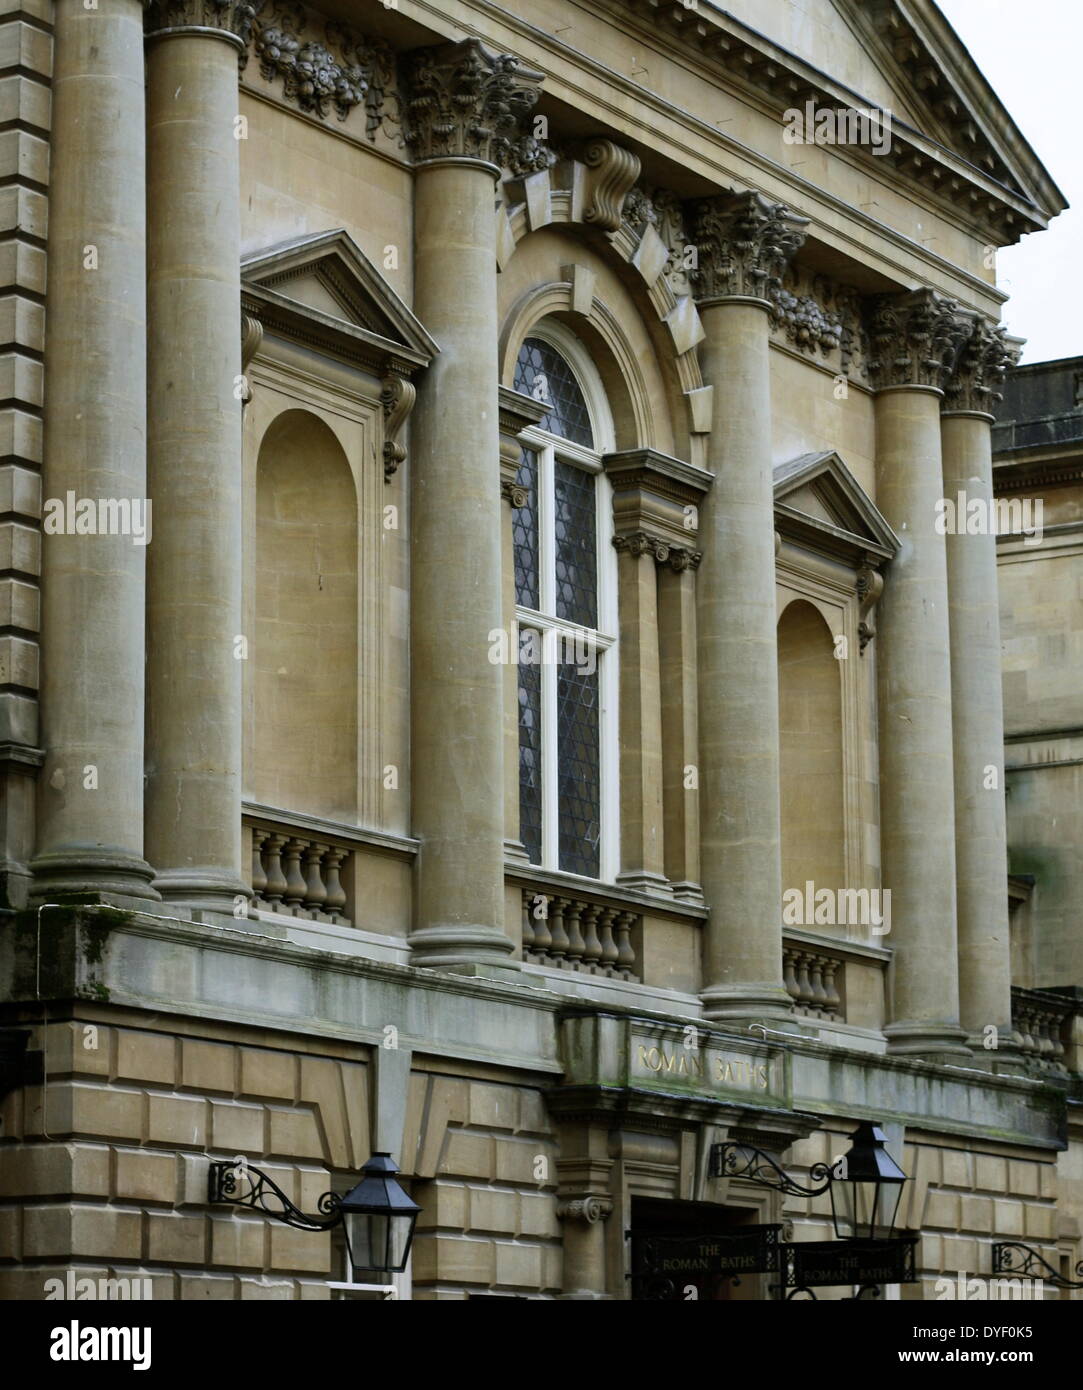 L'entrée de l'abbaye de Bath, également connu sous le nom de l'église de l'abbaye de Saint Pierre et Saint Paul. L'un des plus importants exemples d'architecture gothique perpendiculaire à l'ouest du pays. Dans la ville romaine de Bath, dans le Somerset, Angleterre. À l'origine fondée au 7ème siècle, reconstruite au 12e et 16e siècles, et un important travail de restauration a été réalisée dans les années 1860 par Sir George Gilbert Scott. Banque D'Images